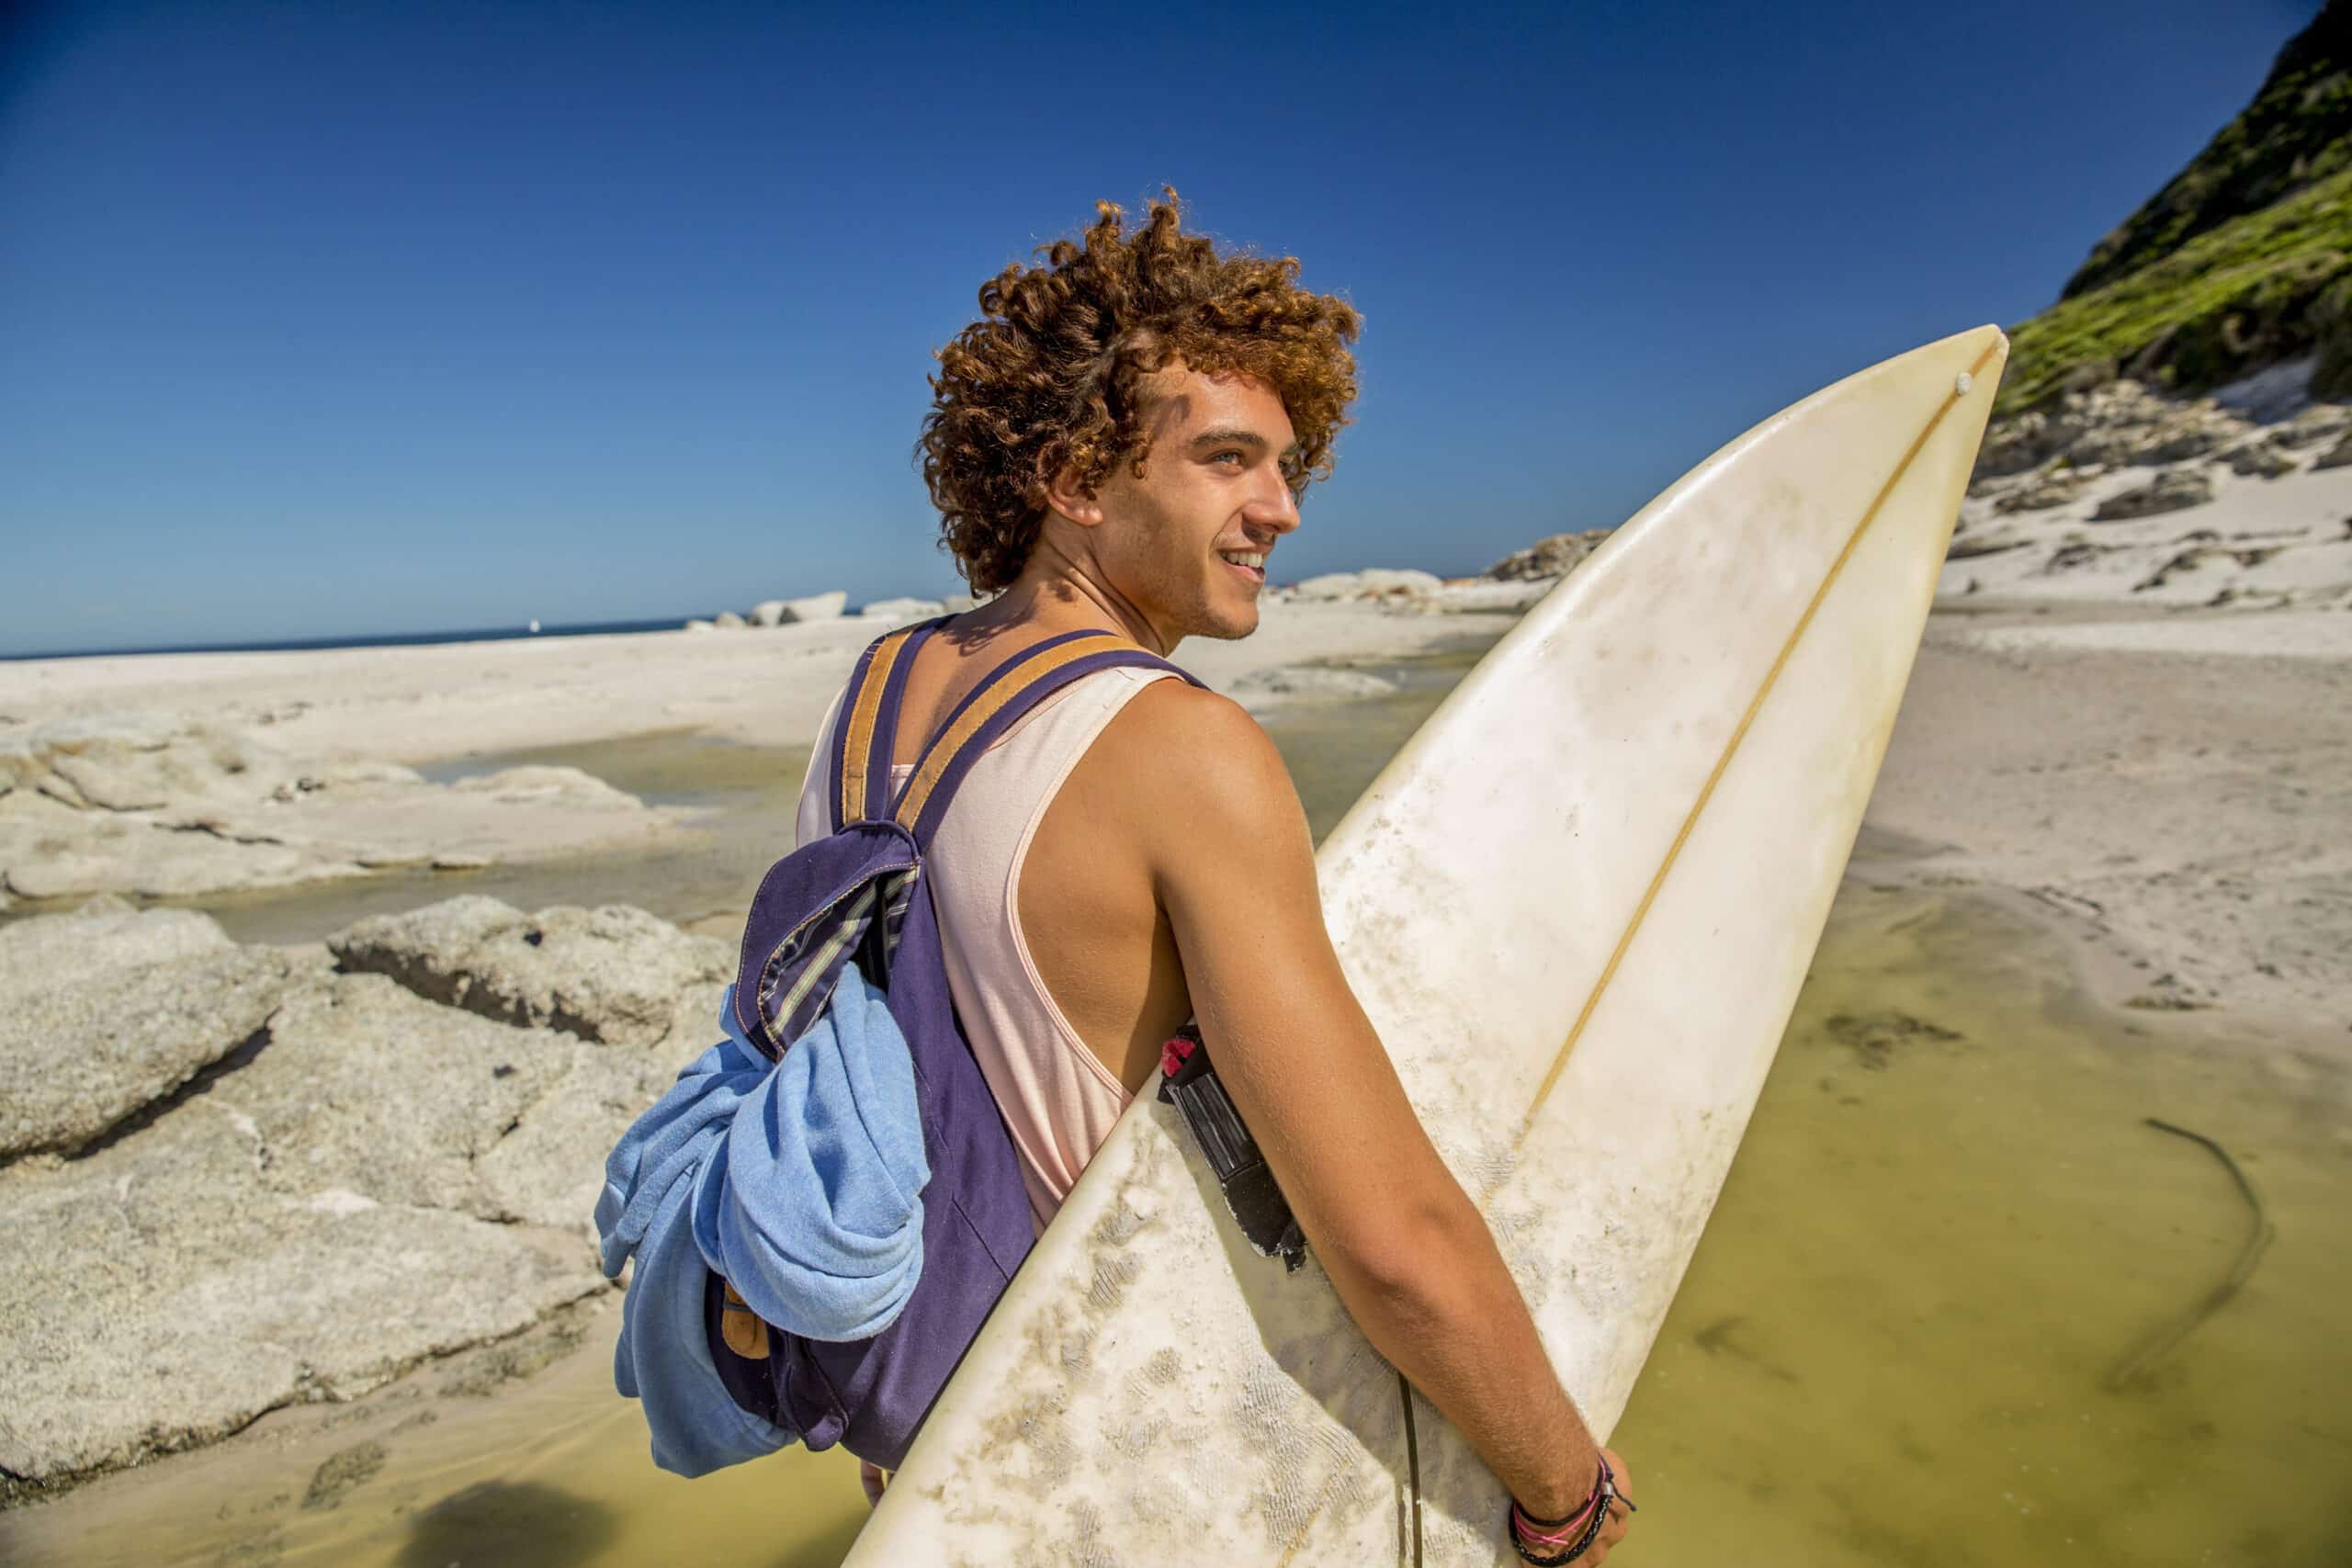 Ein junger Mann mit lockigem Haar, einem weißen Surfbrett und einem Rucksack auf dem Kopf, lächelt, während er an einem sonnigen Strand mit Felsen und dem Meer im Hintergrund spazieren geht. © Fotografie Tomas Rodriguez